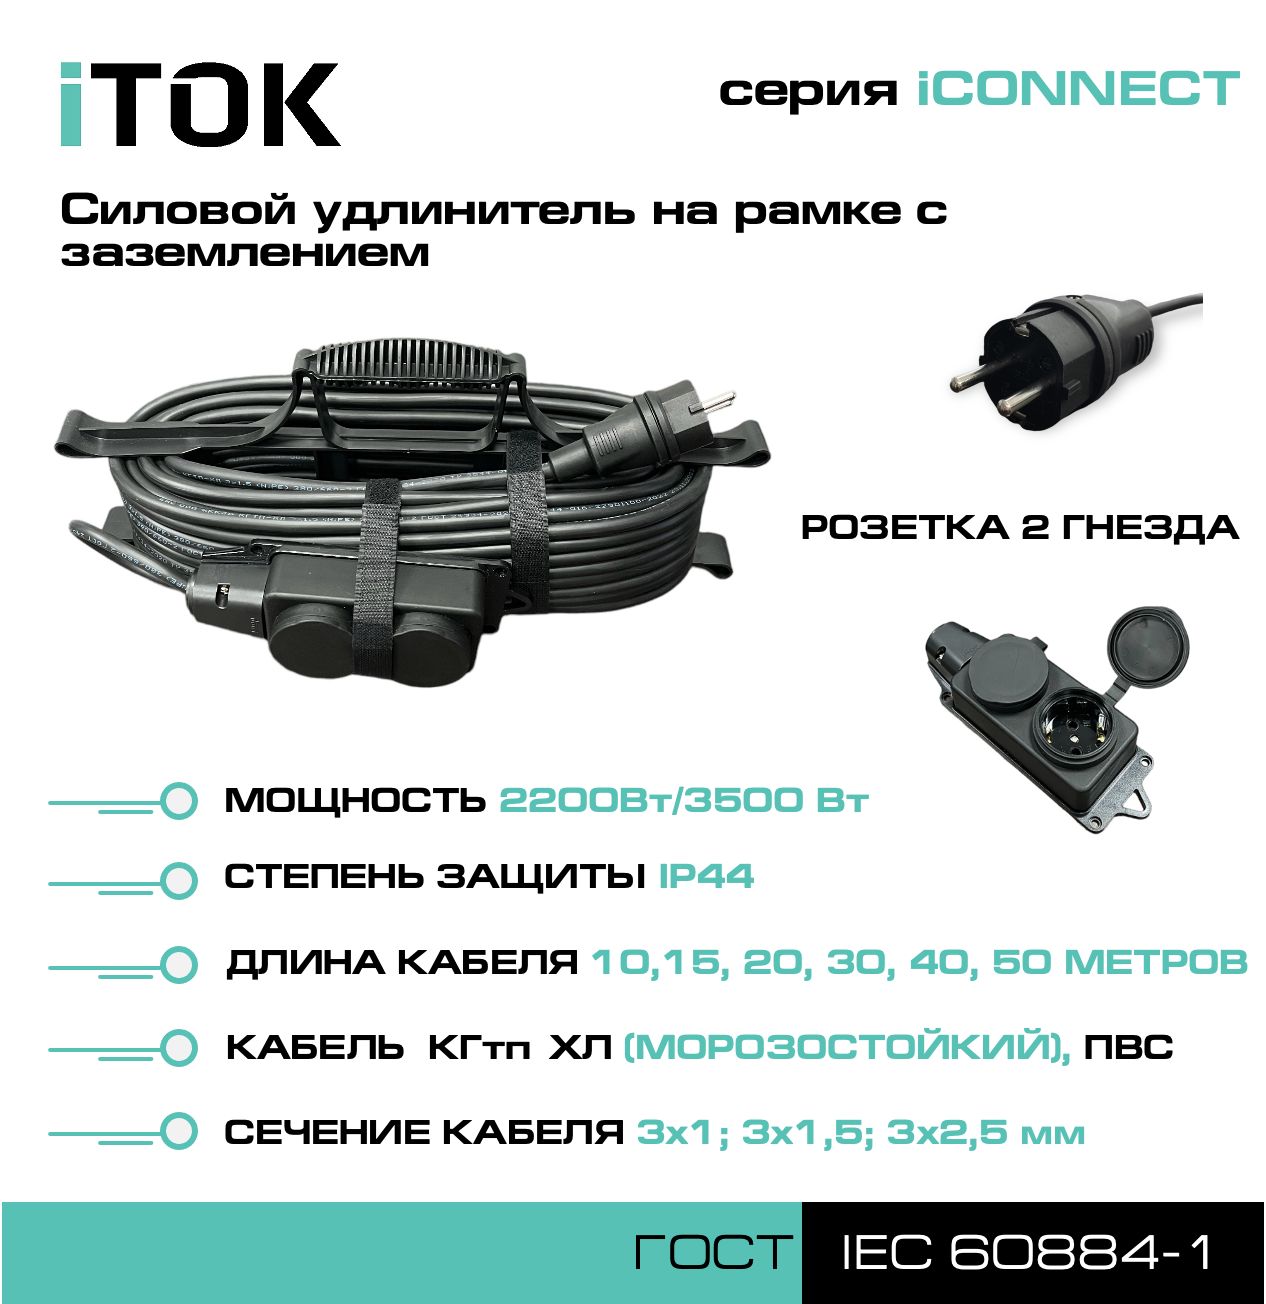 Удлинитель на рамке с заземлением серии iTOK iCONNECT ПВС 3х1,5 мм 2 гнезда IP44 30 м метчики для ремонта резьбы гнезда датчика кислорода ae